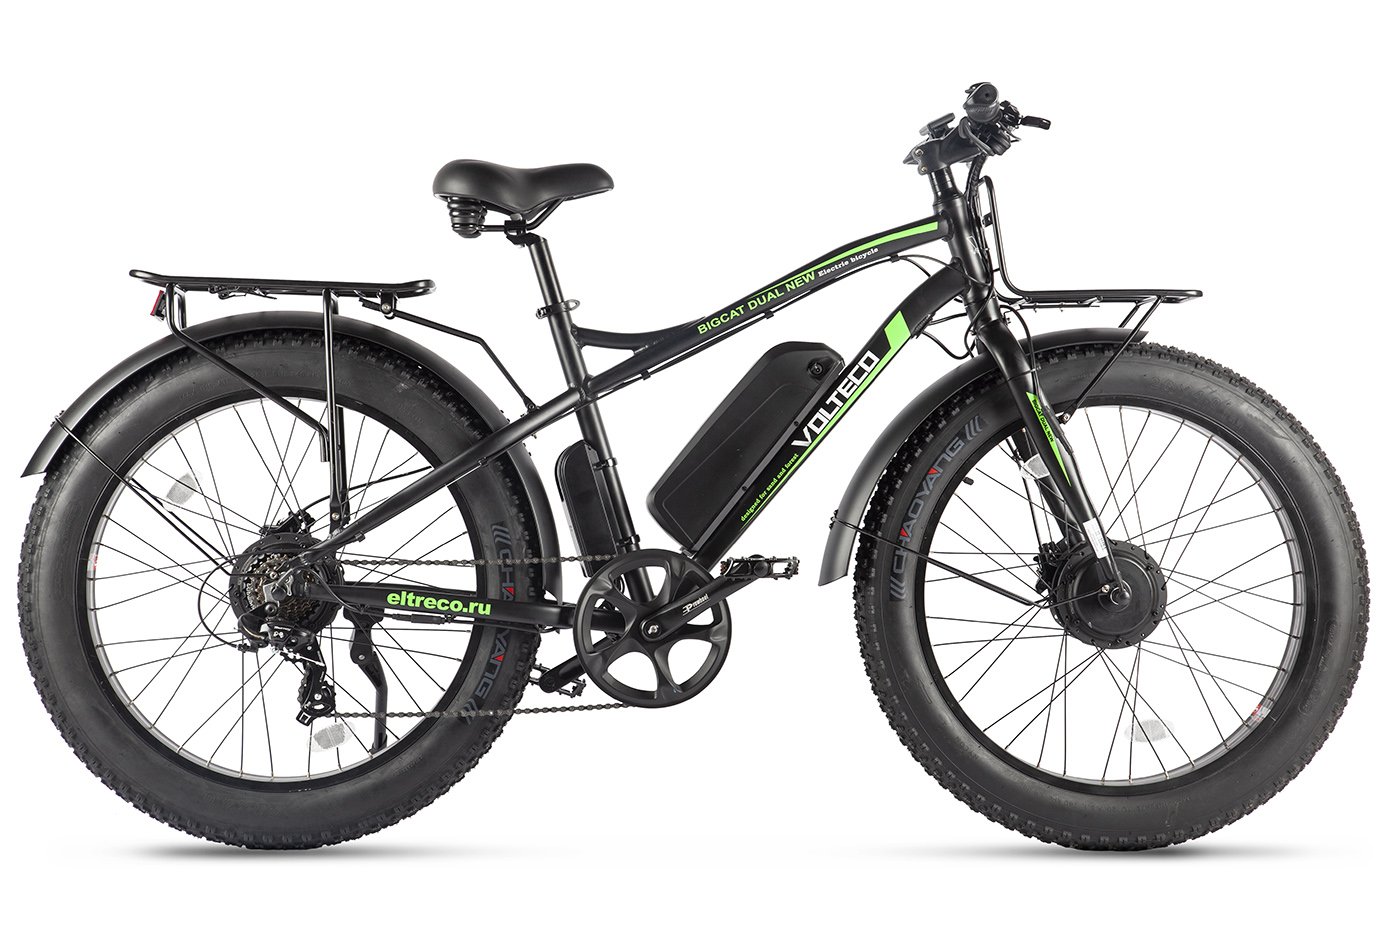  Велосипед Volteco BigCat Dual (2021) 2021